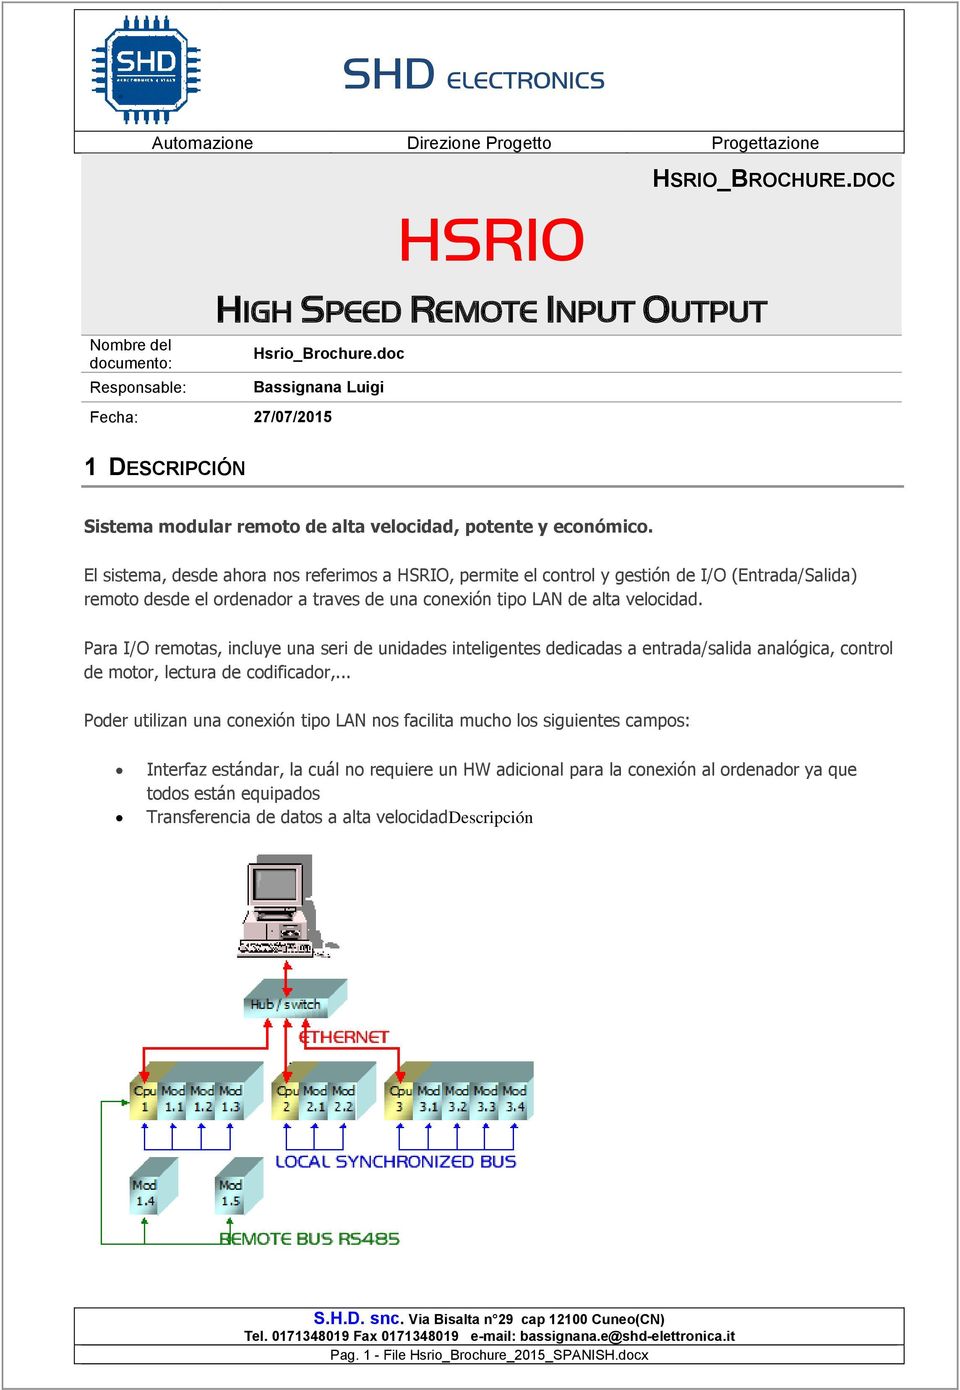 El sistema, desde ahora nos referimos a HSRIO, permite el control y gestión de I/O (Entrada/Salida) remoto desde el ordenador a traves de una conexión tipo LAN de alta velocidad.